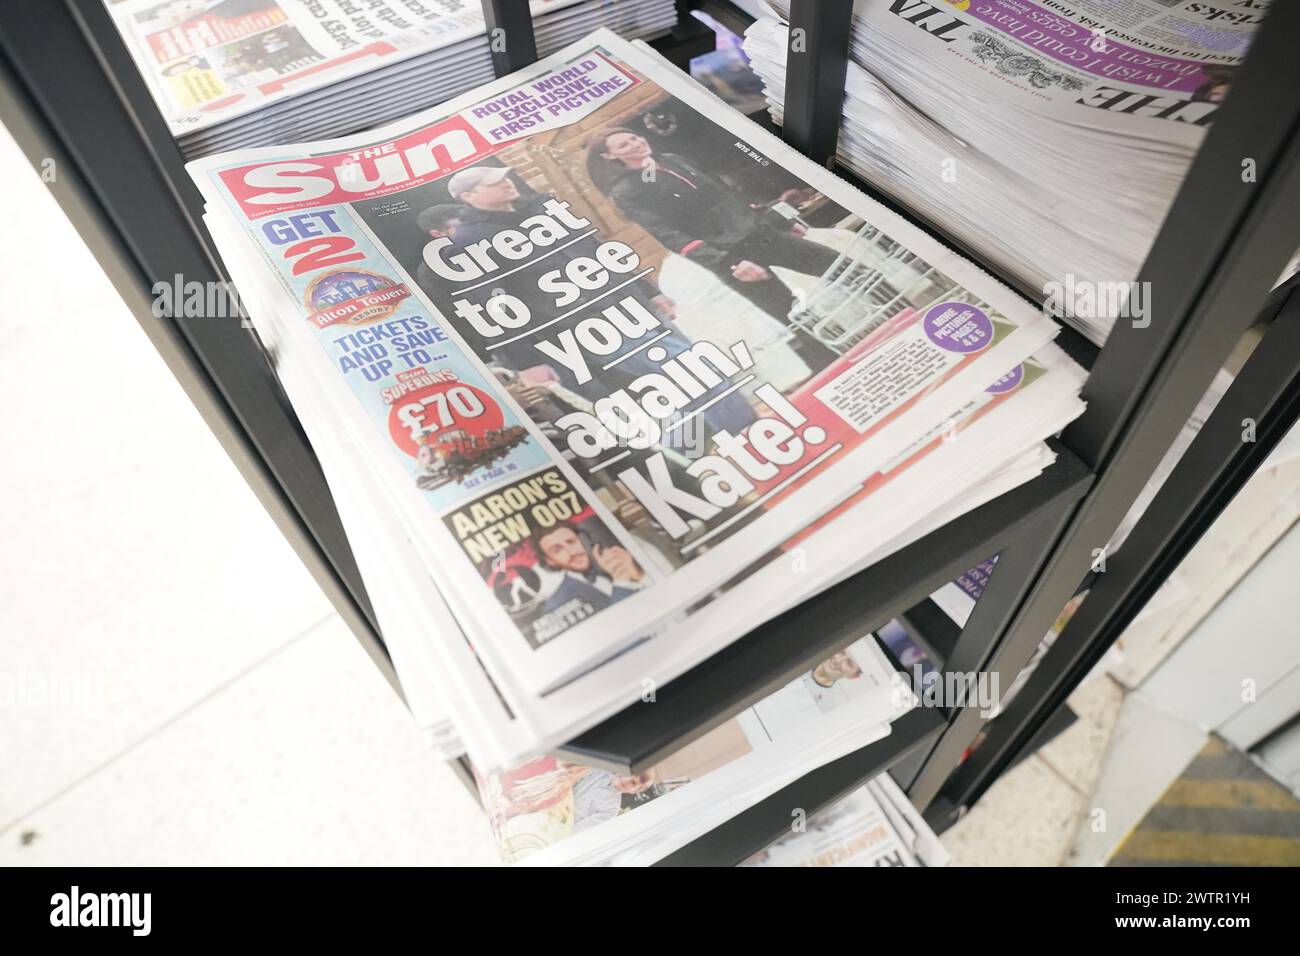 Die Sun-Zeitung auf einem Stand im Zentrum Londons, die die Prinzessin von Wales mit dem Prinzen von Wales während eines Besuchs in einem Bauernladen in Windsor zeigt. Bilddatum: Dienstag, 19. März 2024. Stockfoto